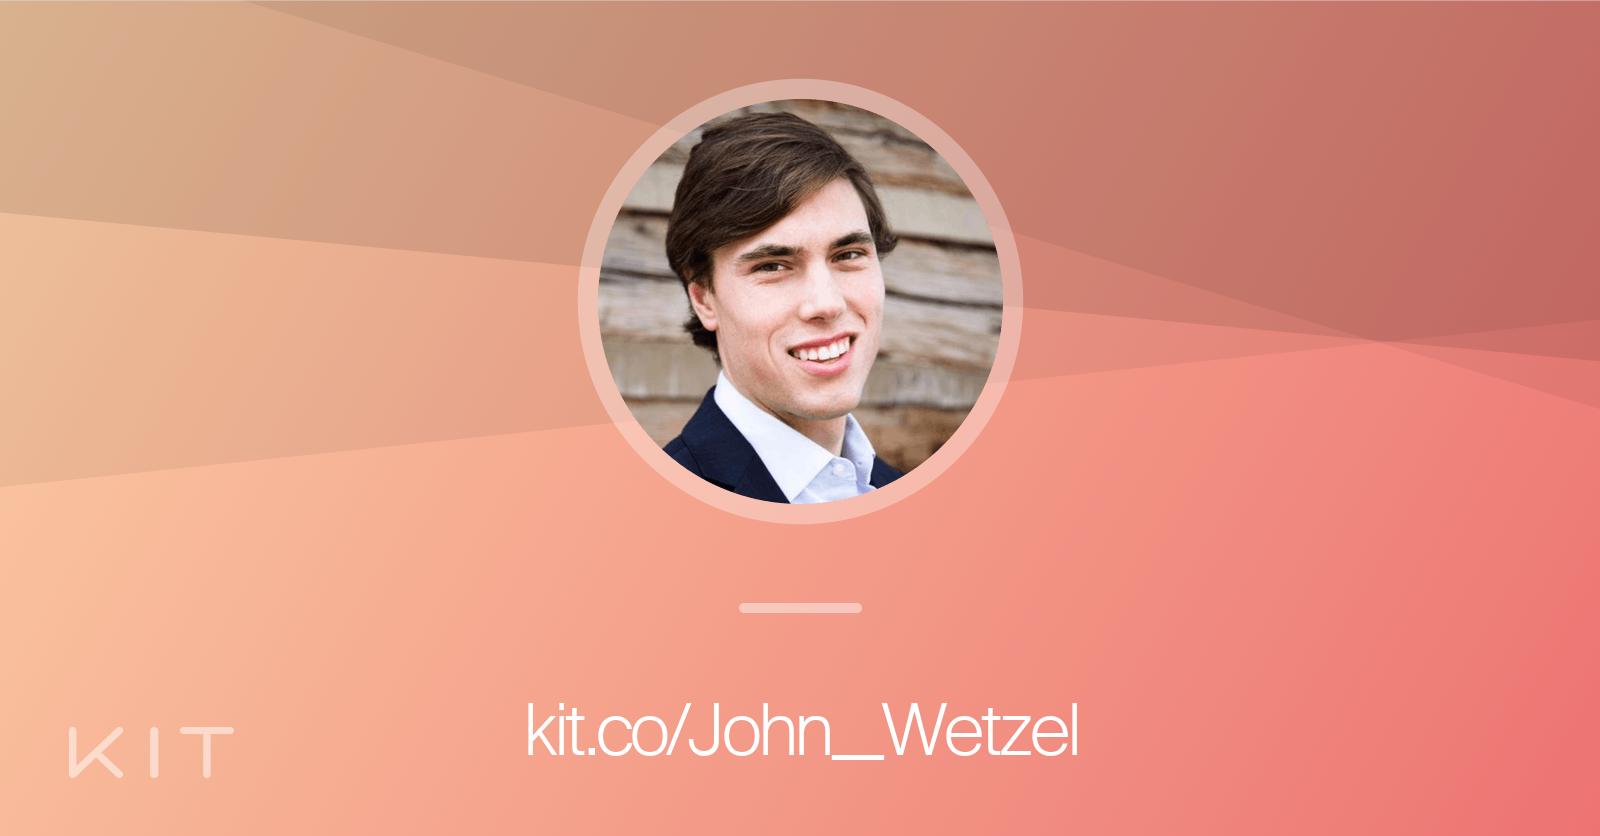 John Wetzel (John__Wetzel) gear • Kit